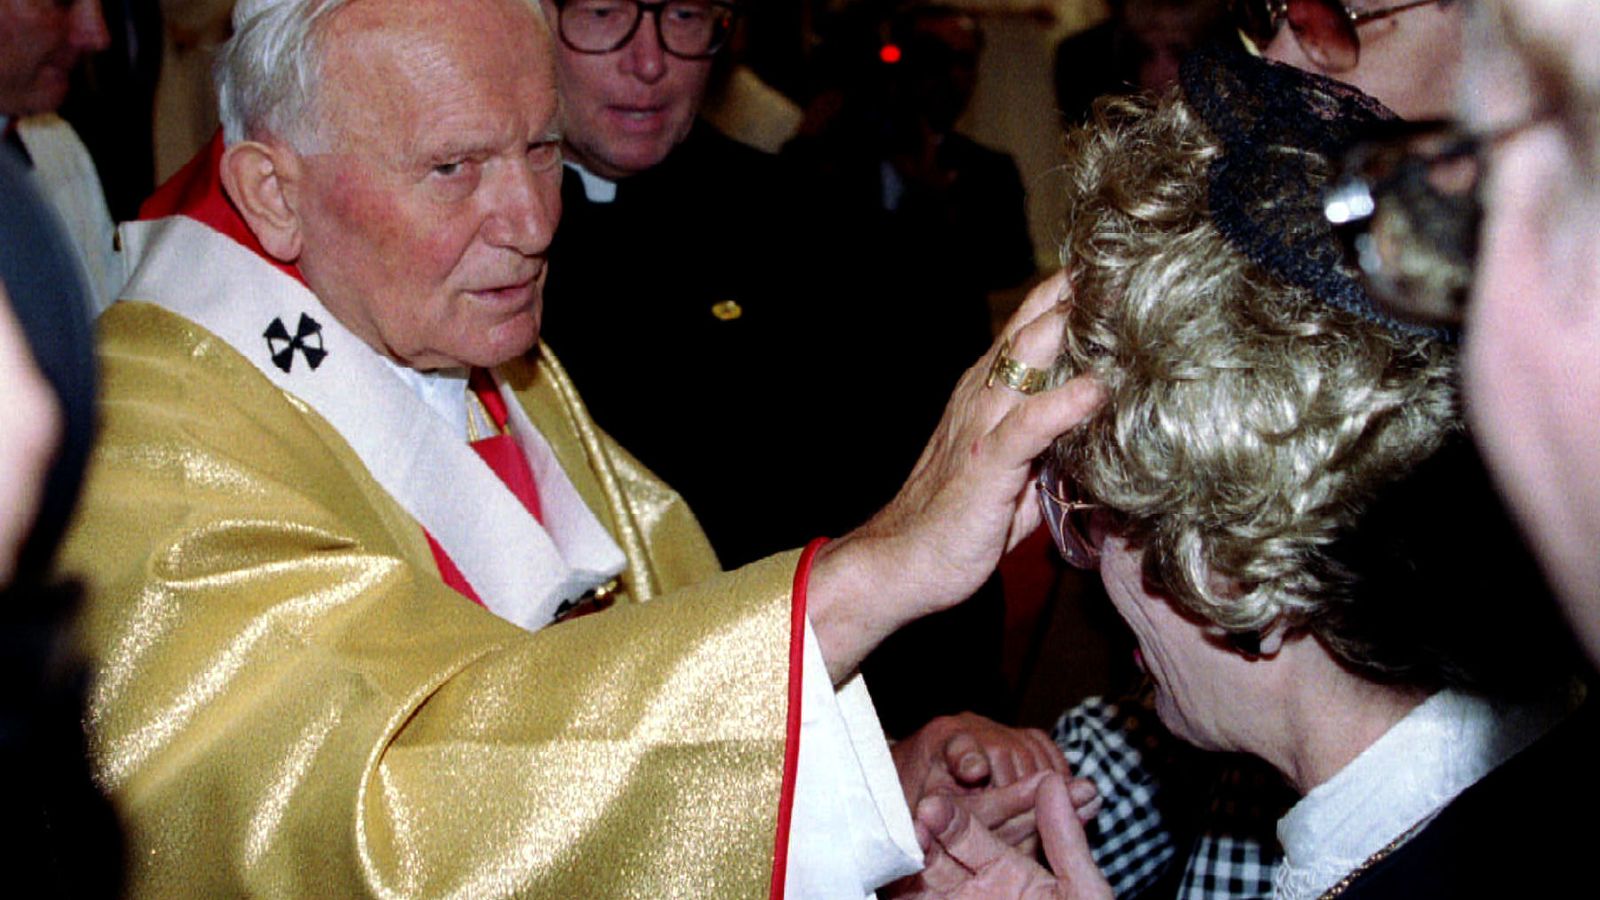 Foto: El papa Juan Pablo II bendice a una mujer en un encuentro con enfermos terminales en 1993. (Reuters)